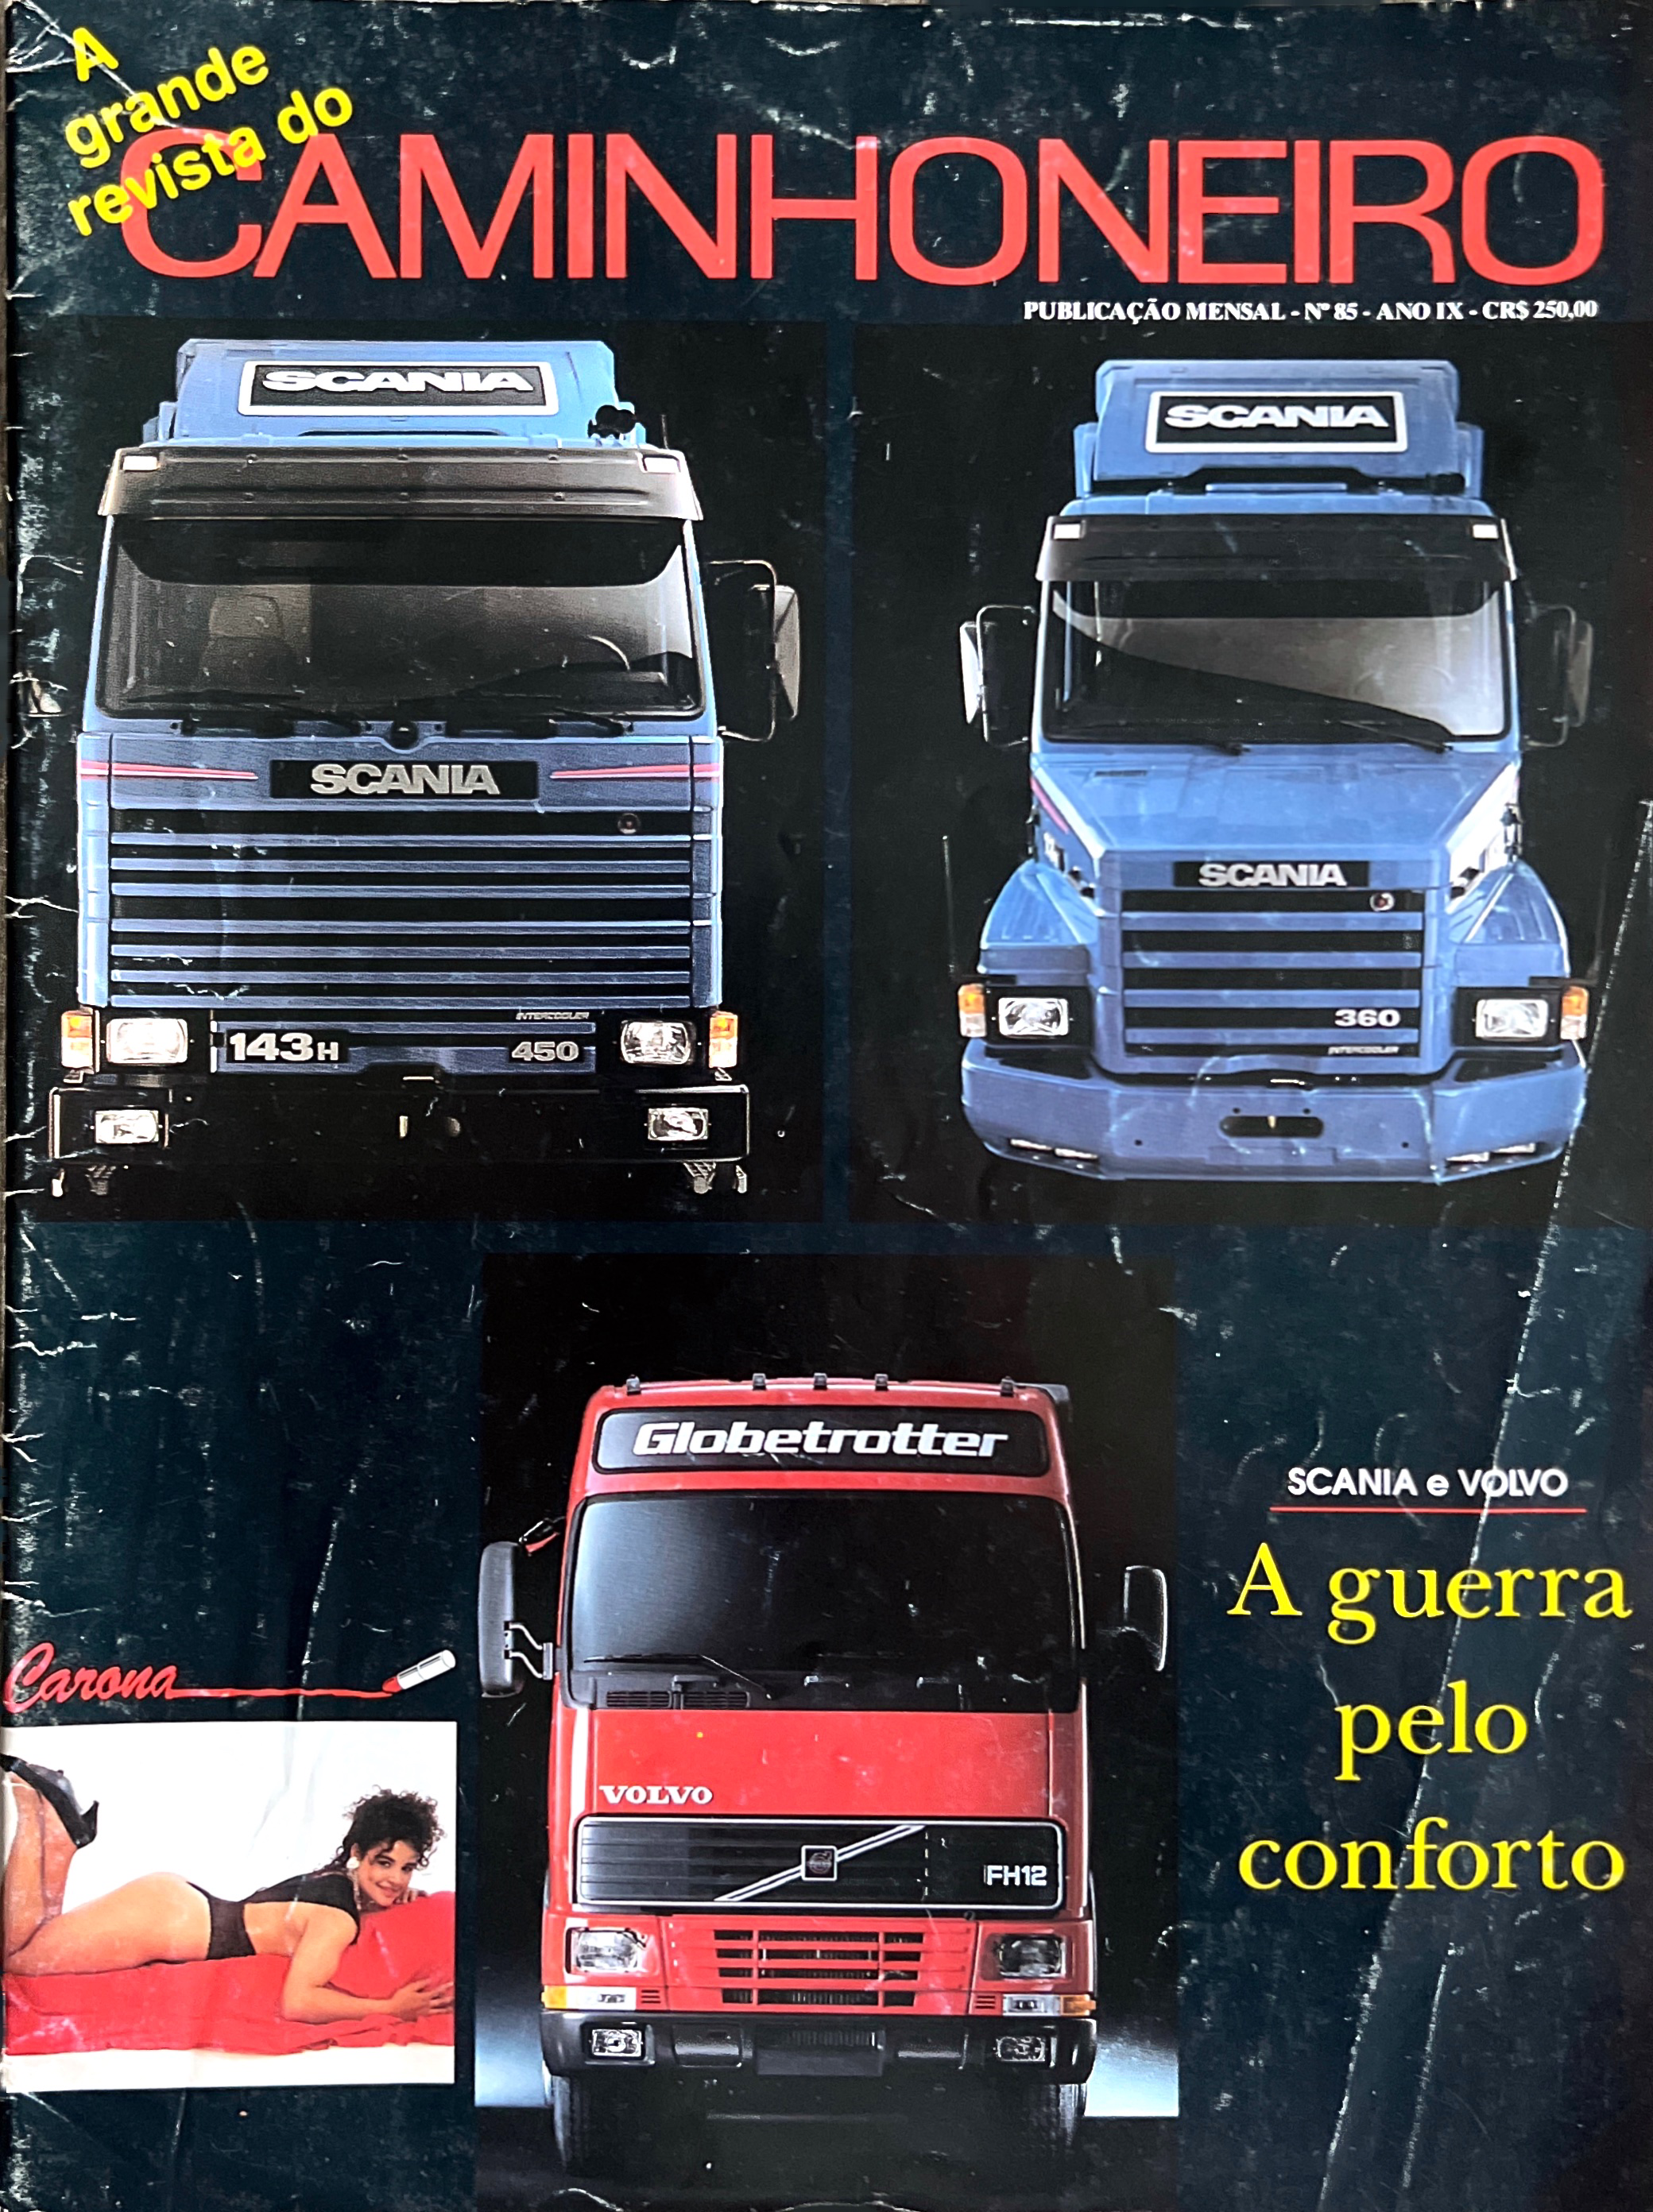 Scania X Volvo: a guerra pelo conforto da década de 90 (Arquivo RC) -  Revista Caminhoneiro